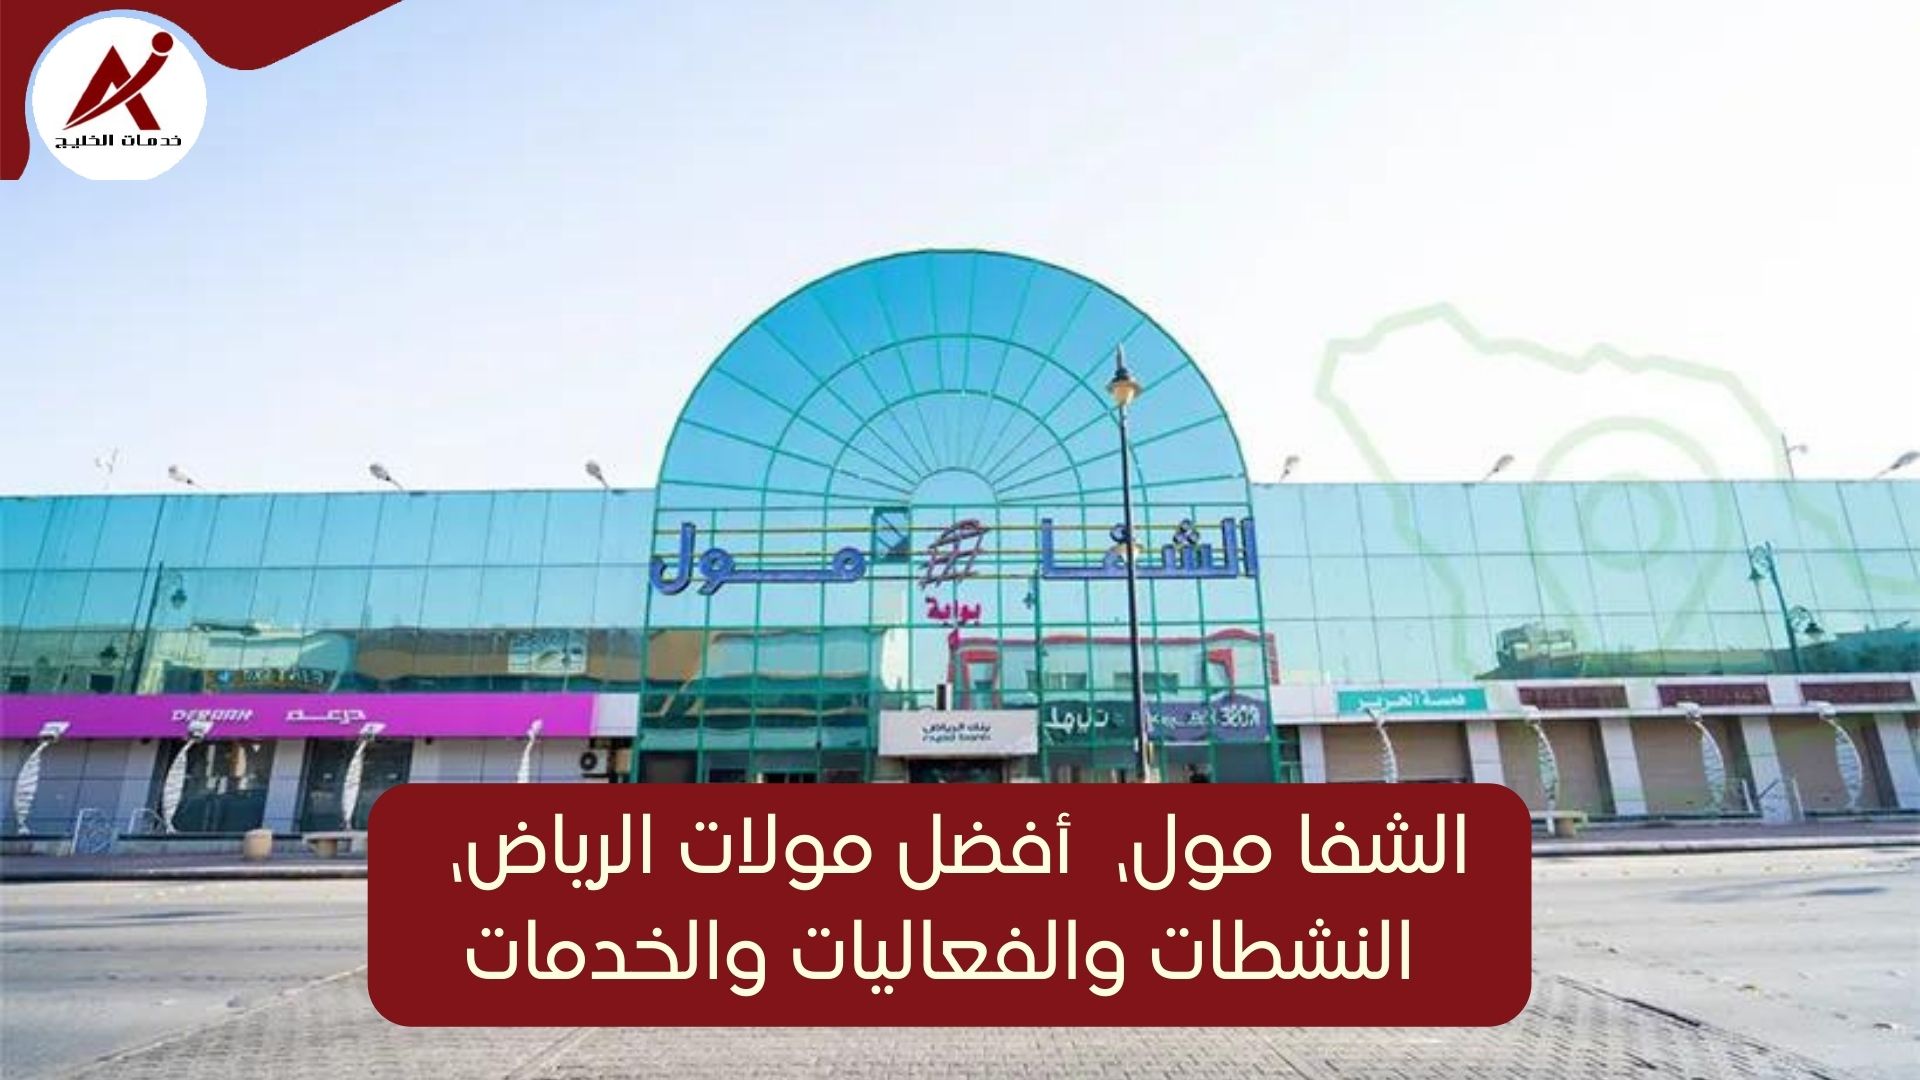  خدمات الخليج الشفا مول، أفضل مولات الرياض، المحلات والخدمات في الشفا مول